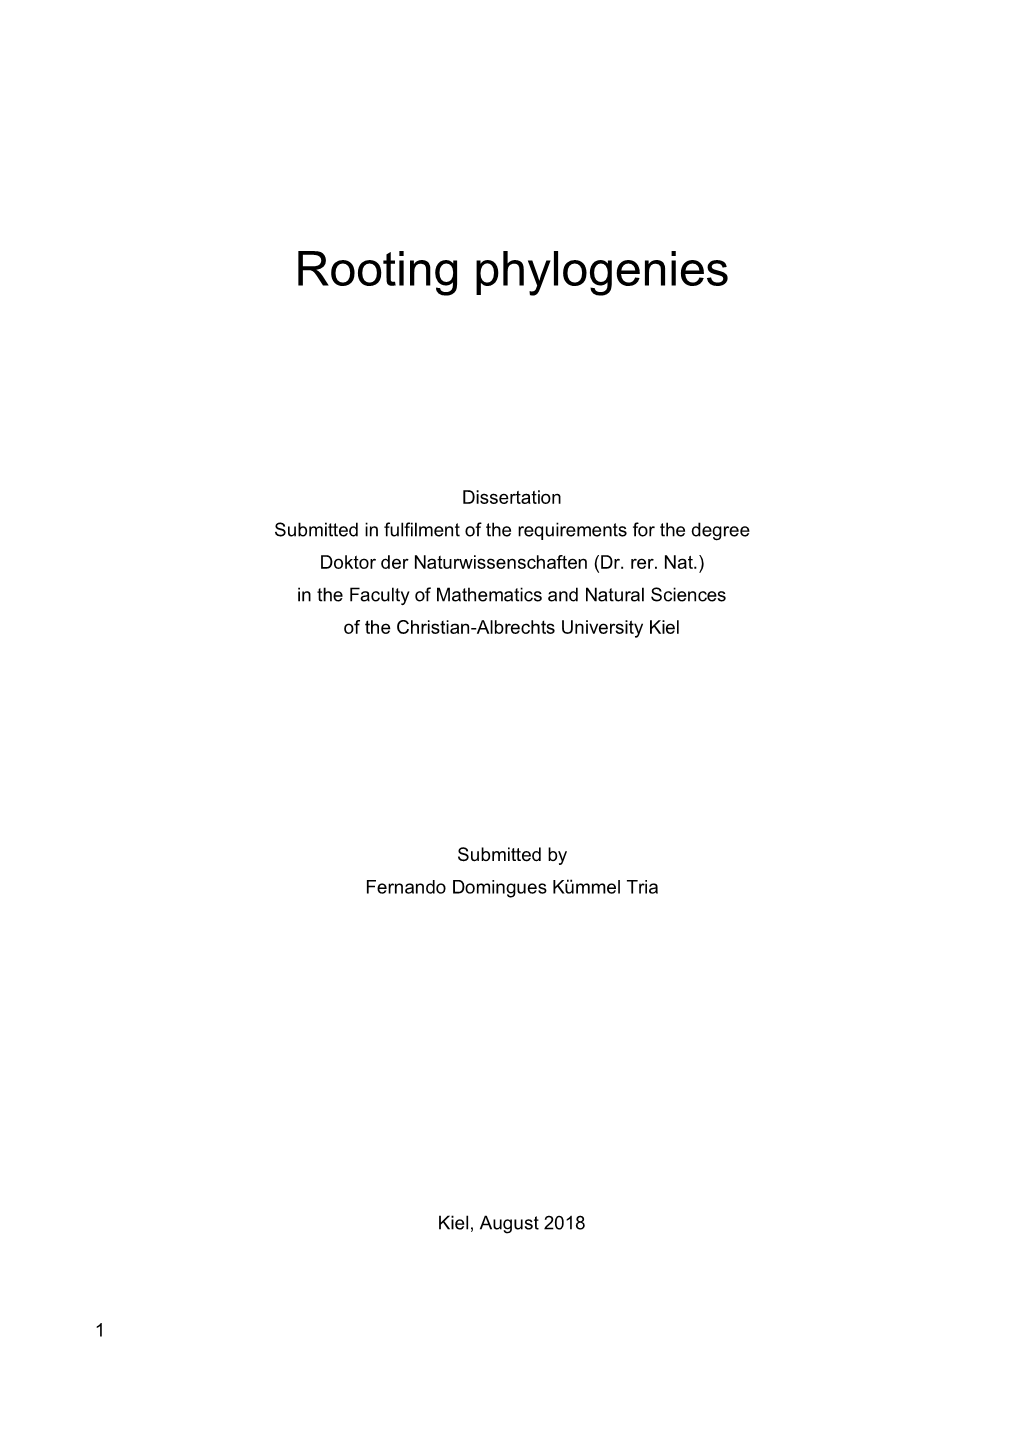 Rooting Phylogenies